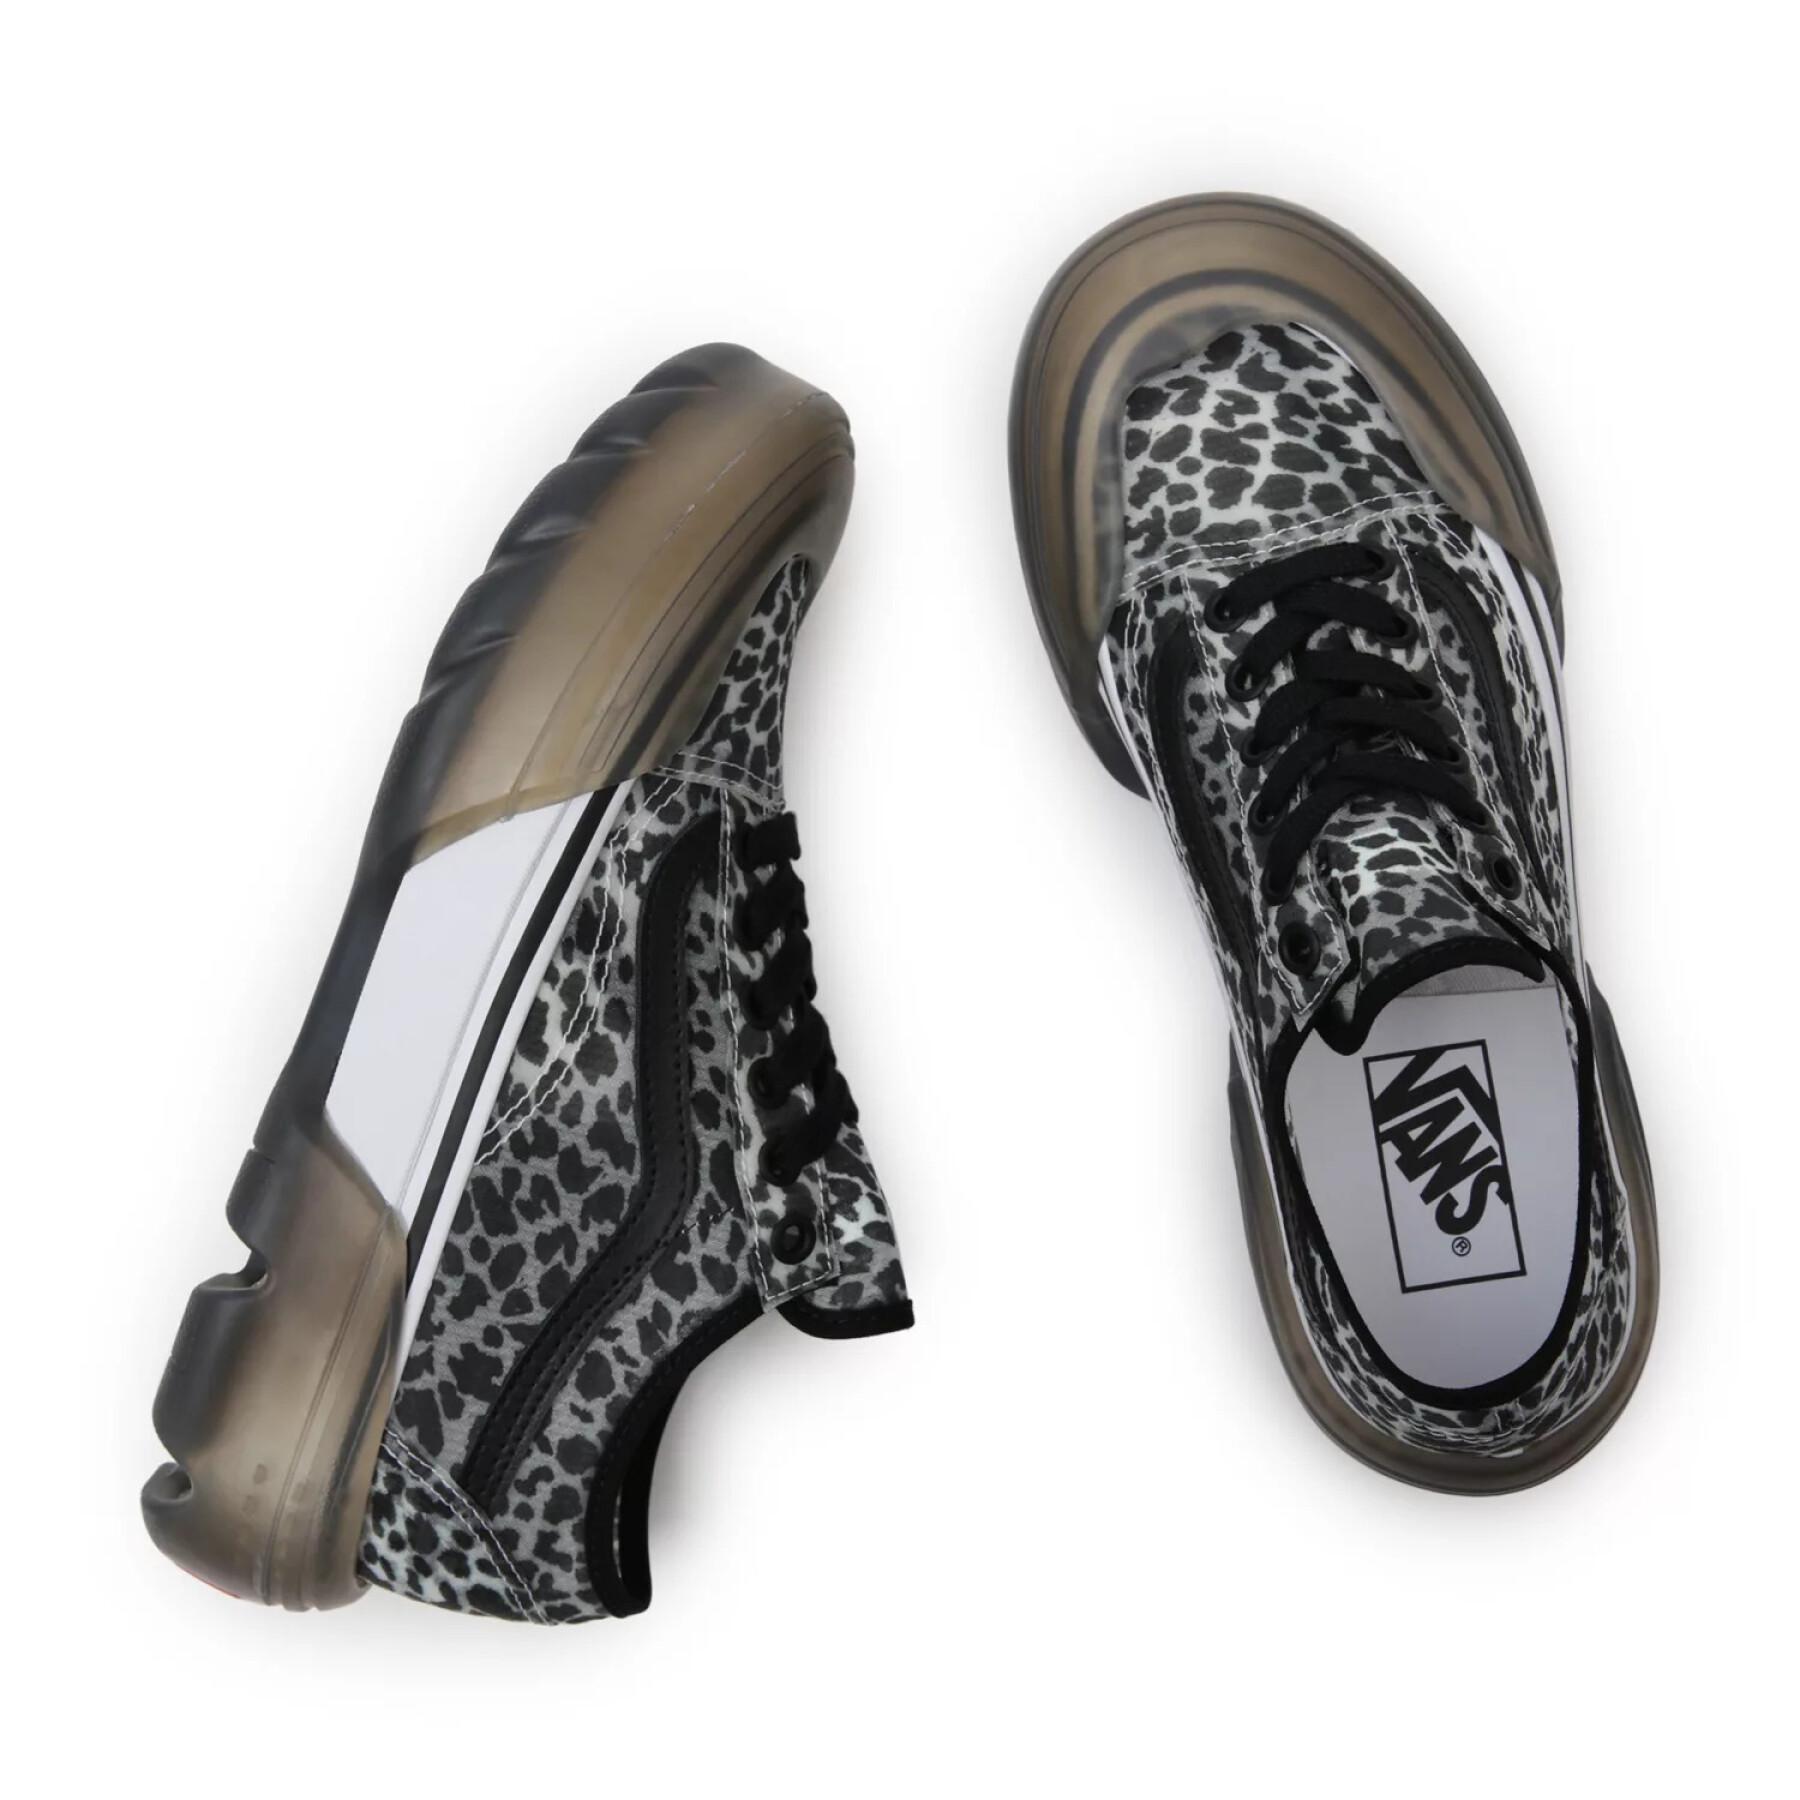 Sneakers für Frauen Vans Old Skool Tapered DX Dots